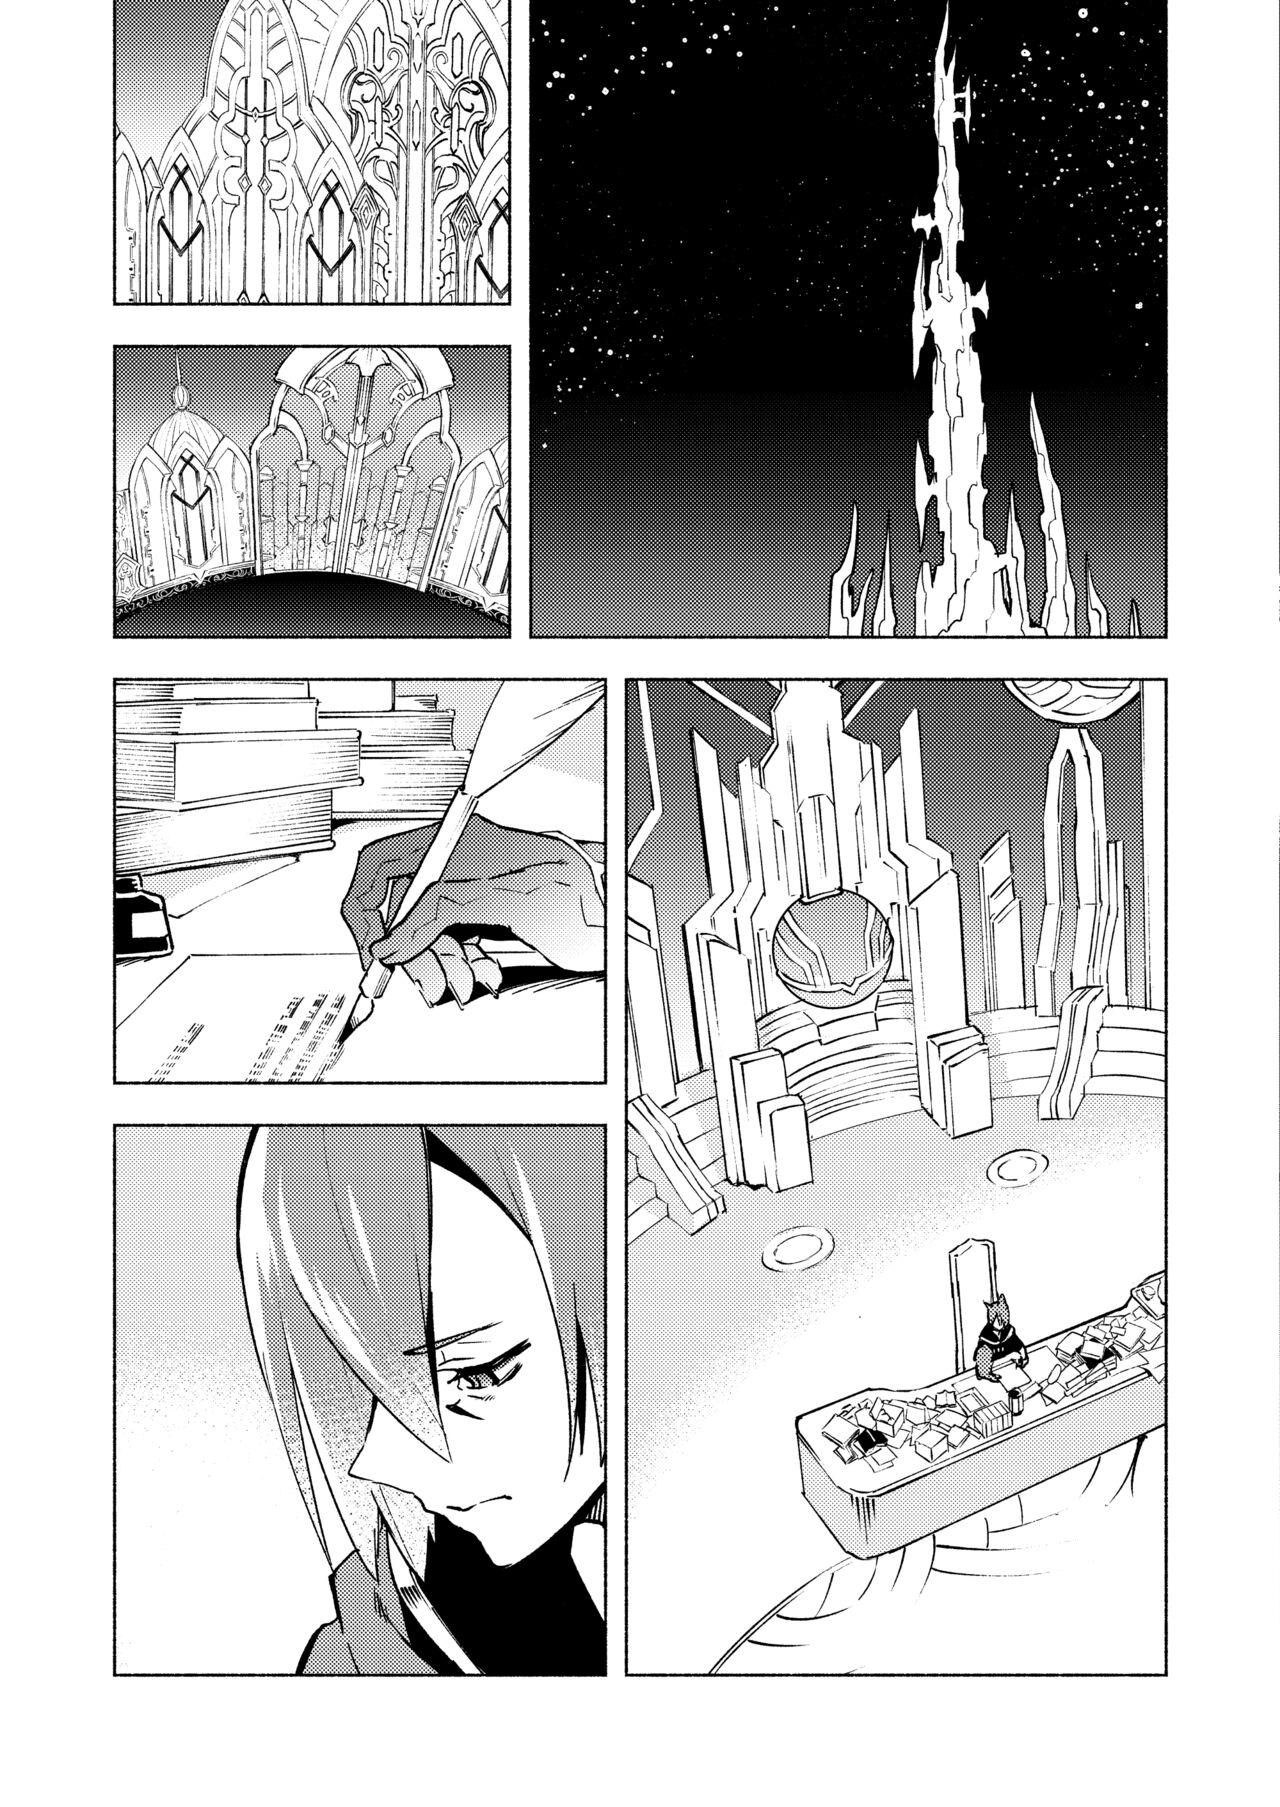 Art Koi no Uta, Ai no Uta. - Final fantasy xiv Final fantasy Thick - Page 7